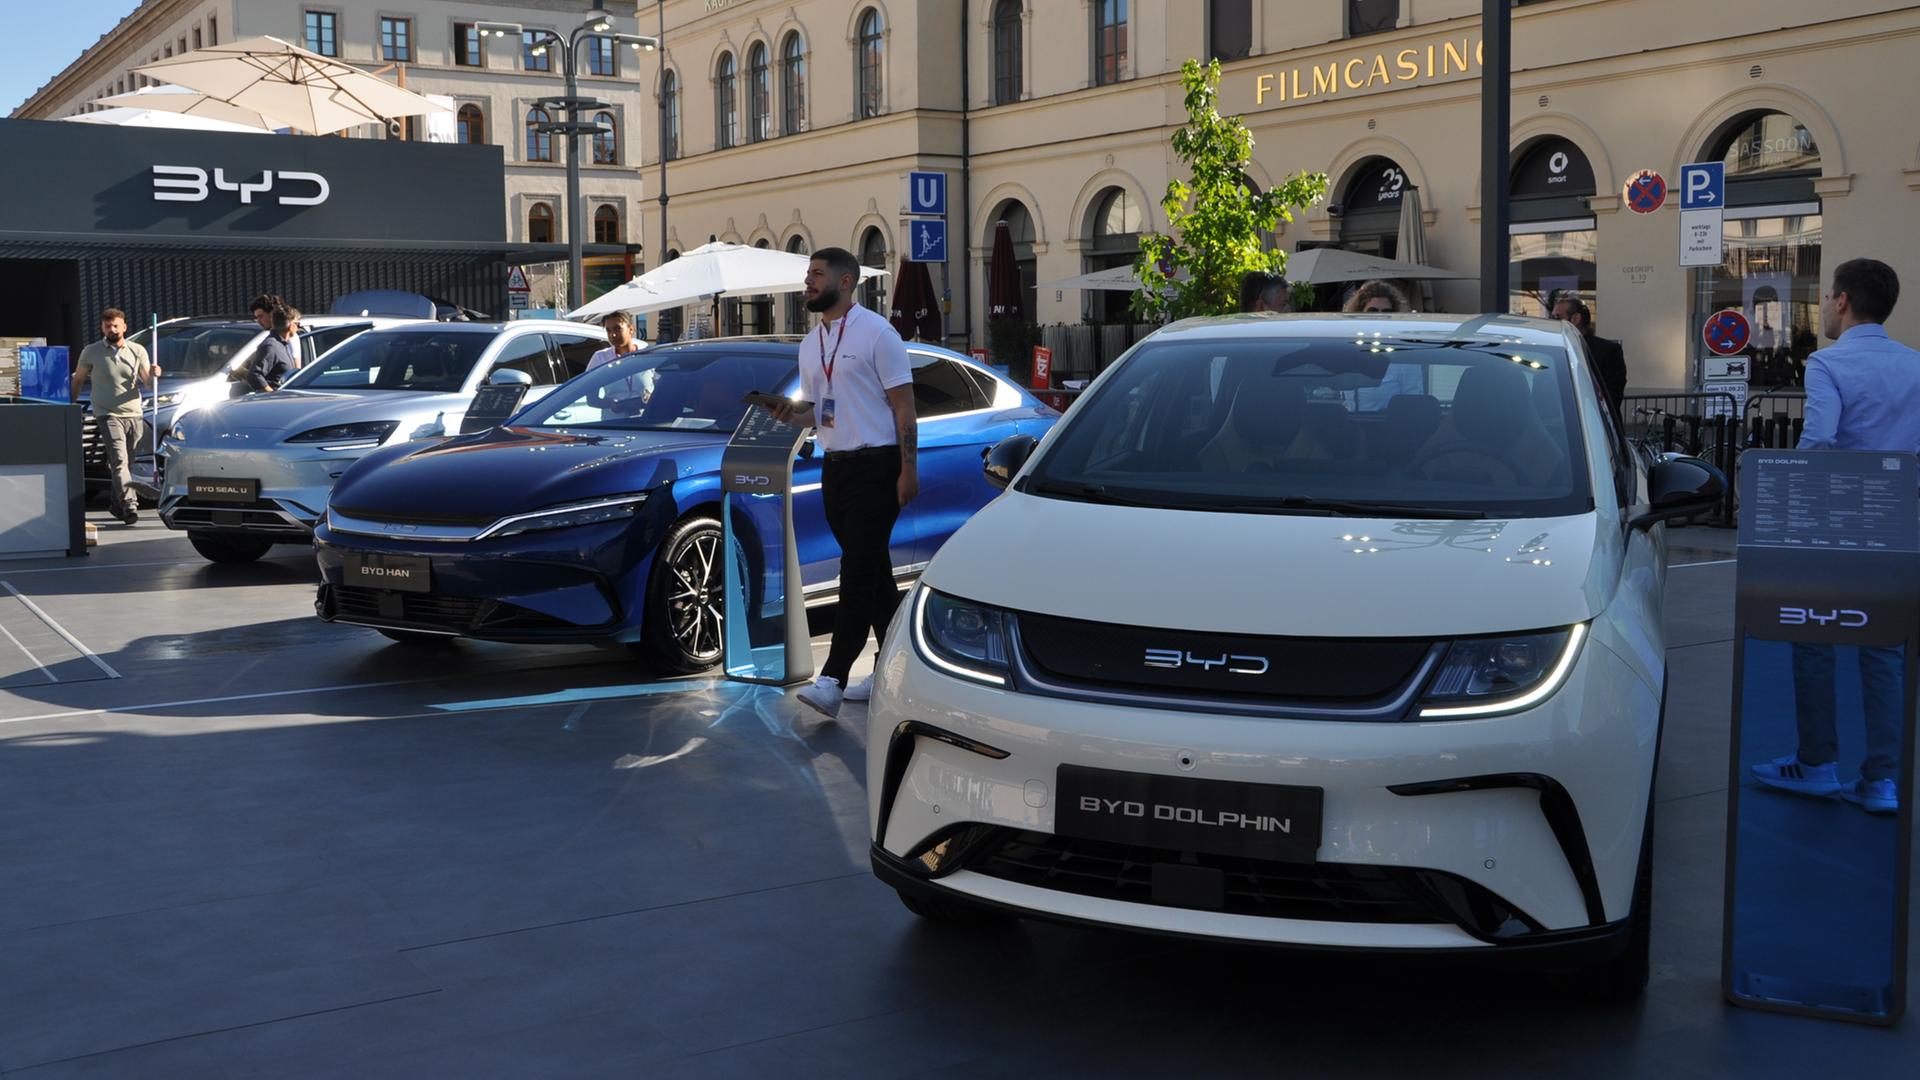 Mehrere Elektroautos stehen vor einer Halle auf der Münchener Automesse IAA.